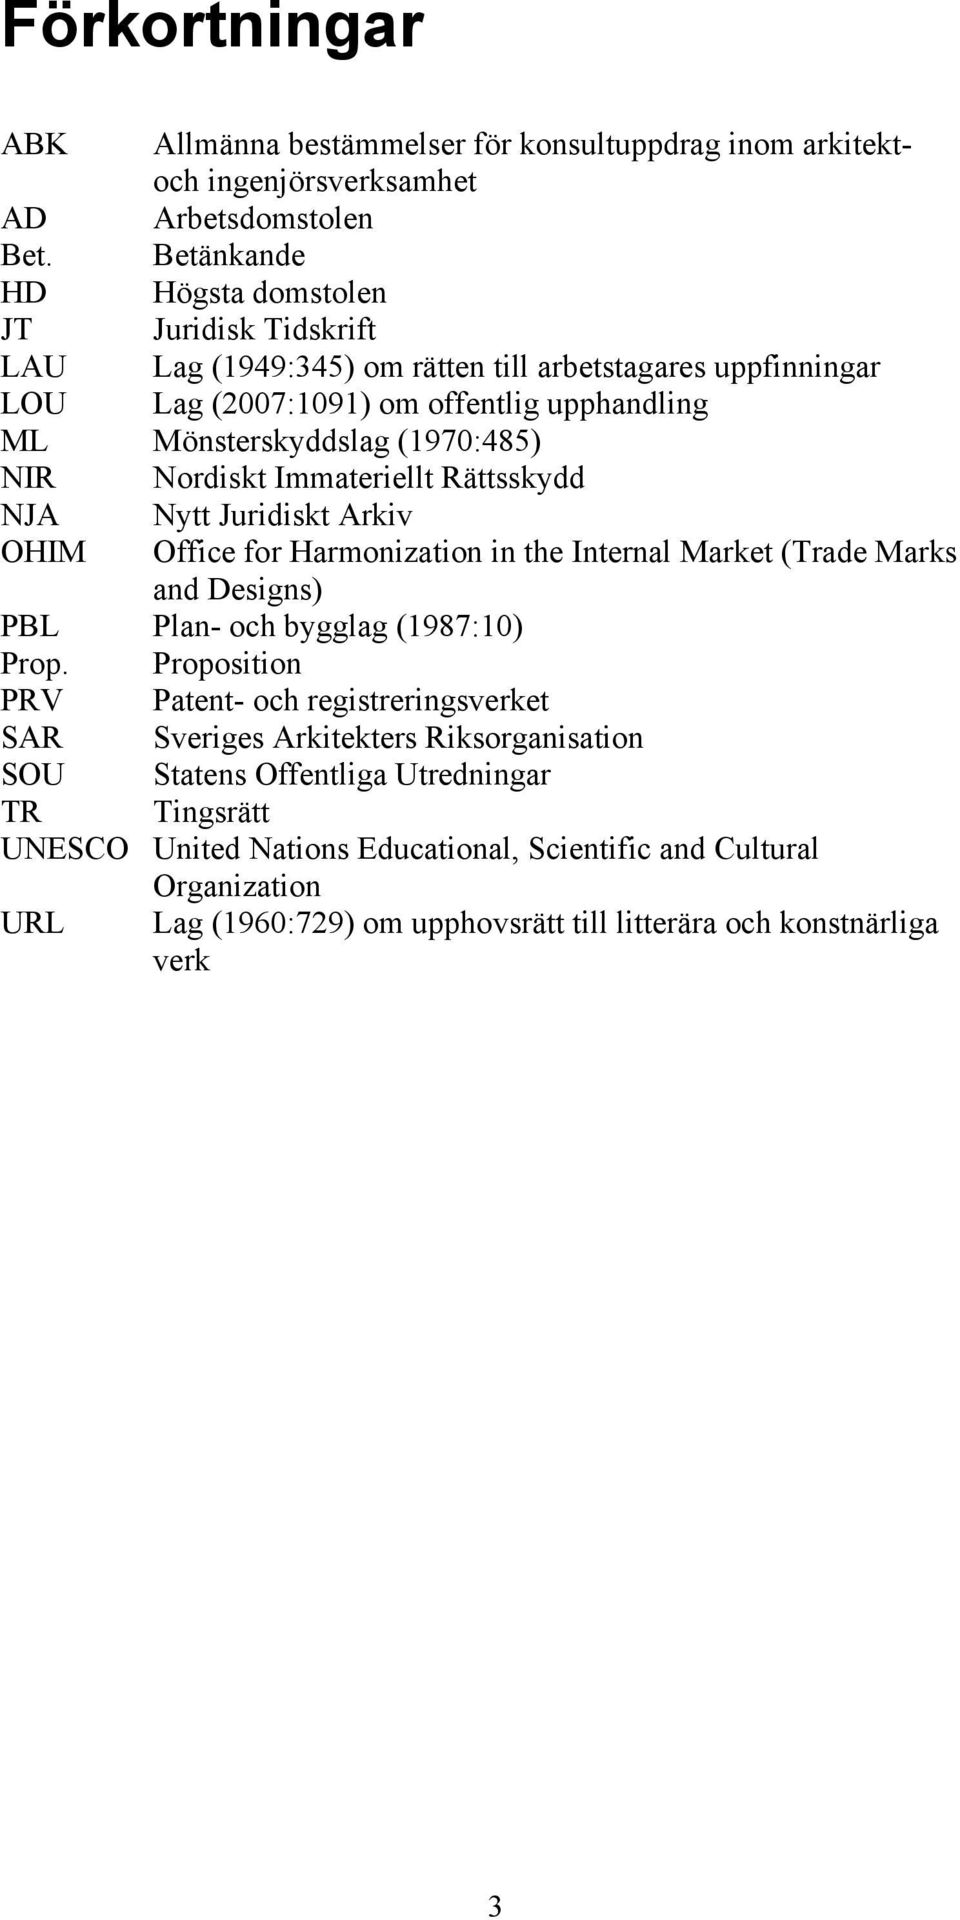 NIR Nordiskt Immateriellt Rättsskydd NJA Nytt Juridiskt Arkiv OHIM Office for Harmonization in the Internal Market (Trade Marks and Designs) PBL Plan- och bygglag (1987:10) Prop.